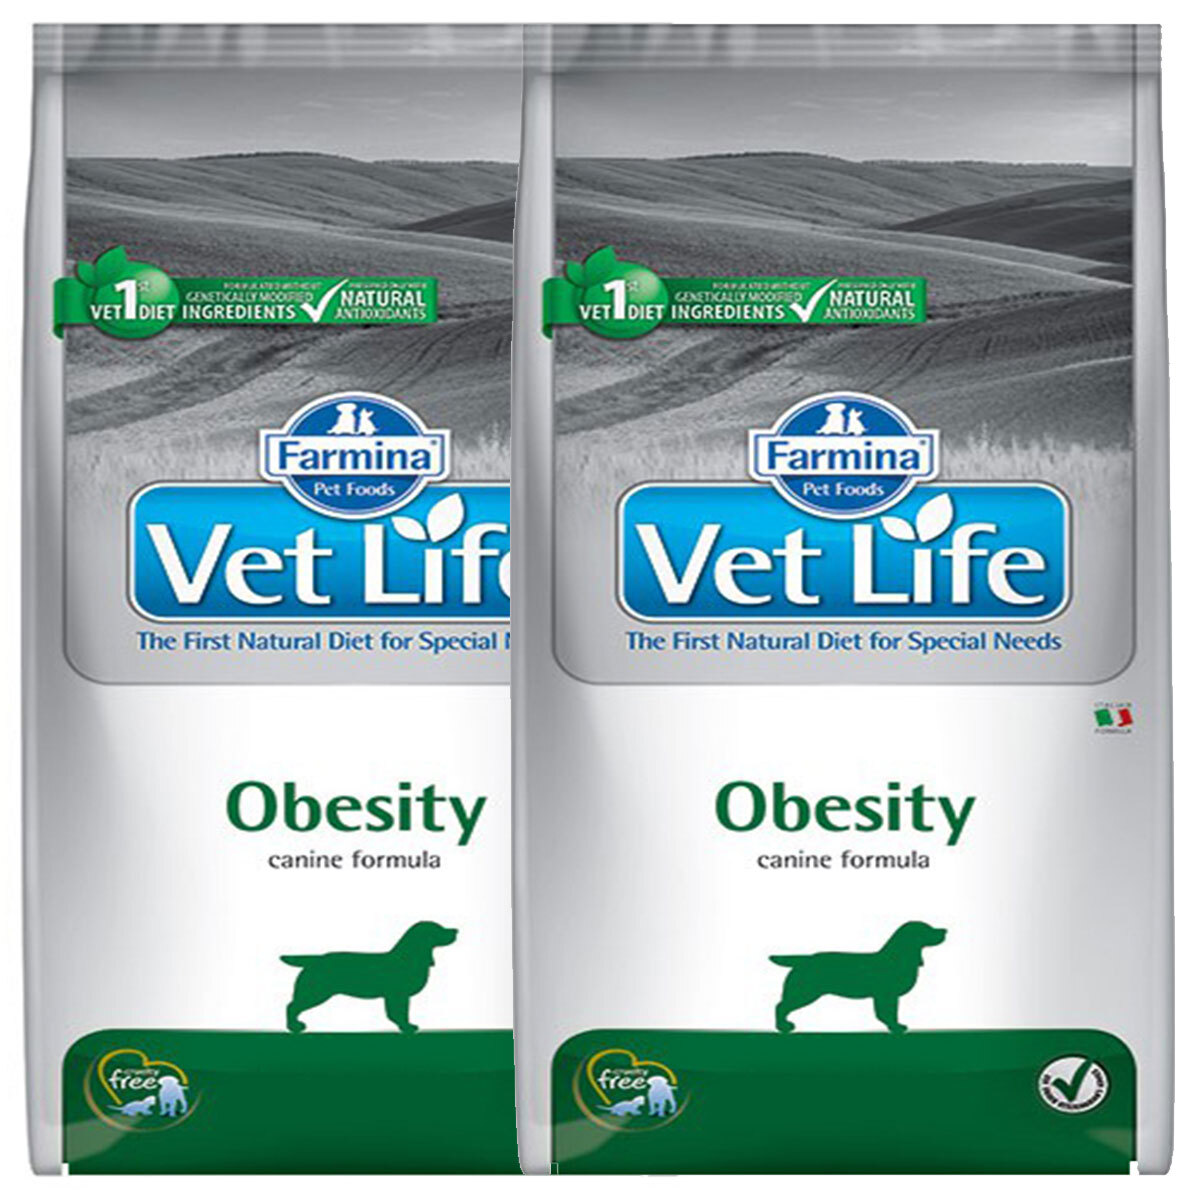 Vet life obesity. Фармина Обесити для собак. Сухой корм для собак Farmina vet Life obesity. Farmina obesity для собак. Vet Life obesity для собак.